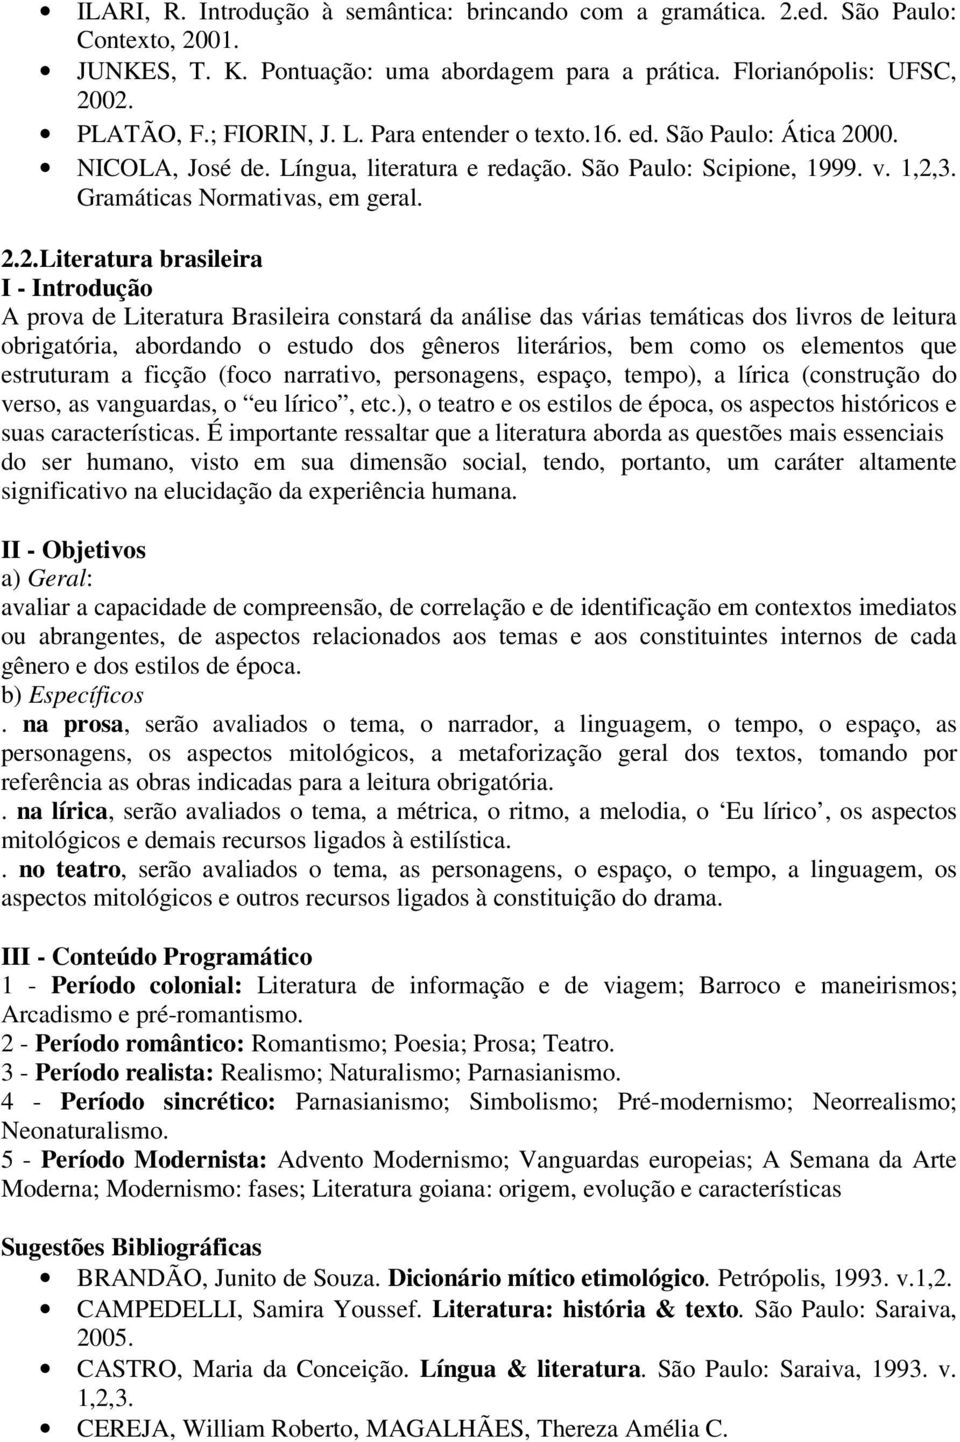 00. NICOLA, José de. Língua, literatura e redação. São Paulo: Scipione, 1999. v. 1,2,